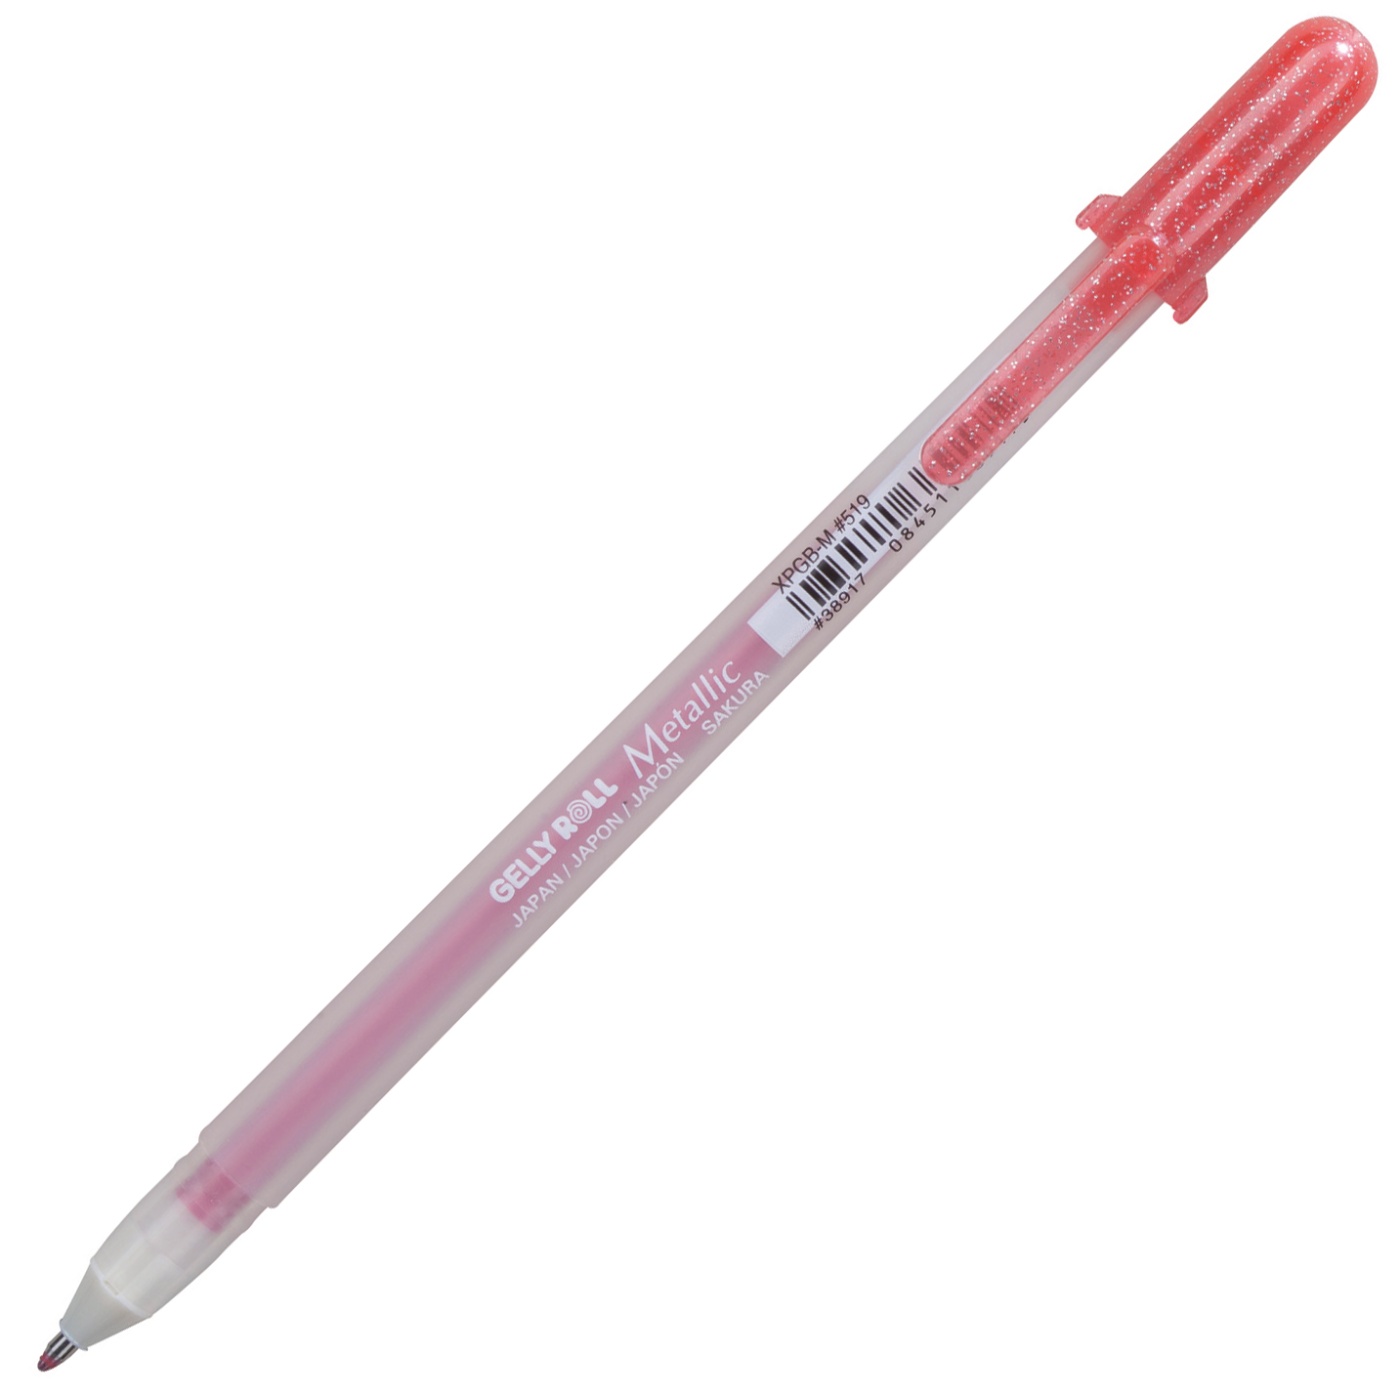 Sakura Gelly Roll Metallic Pens